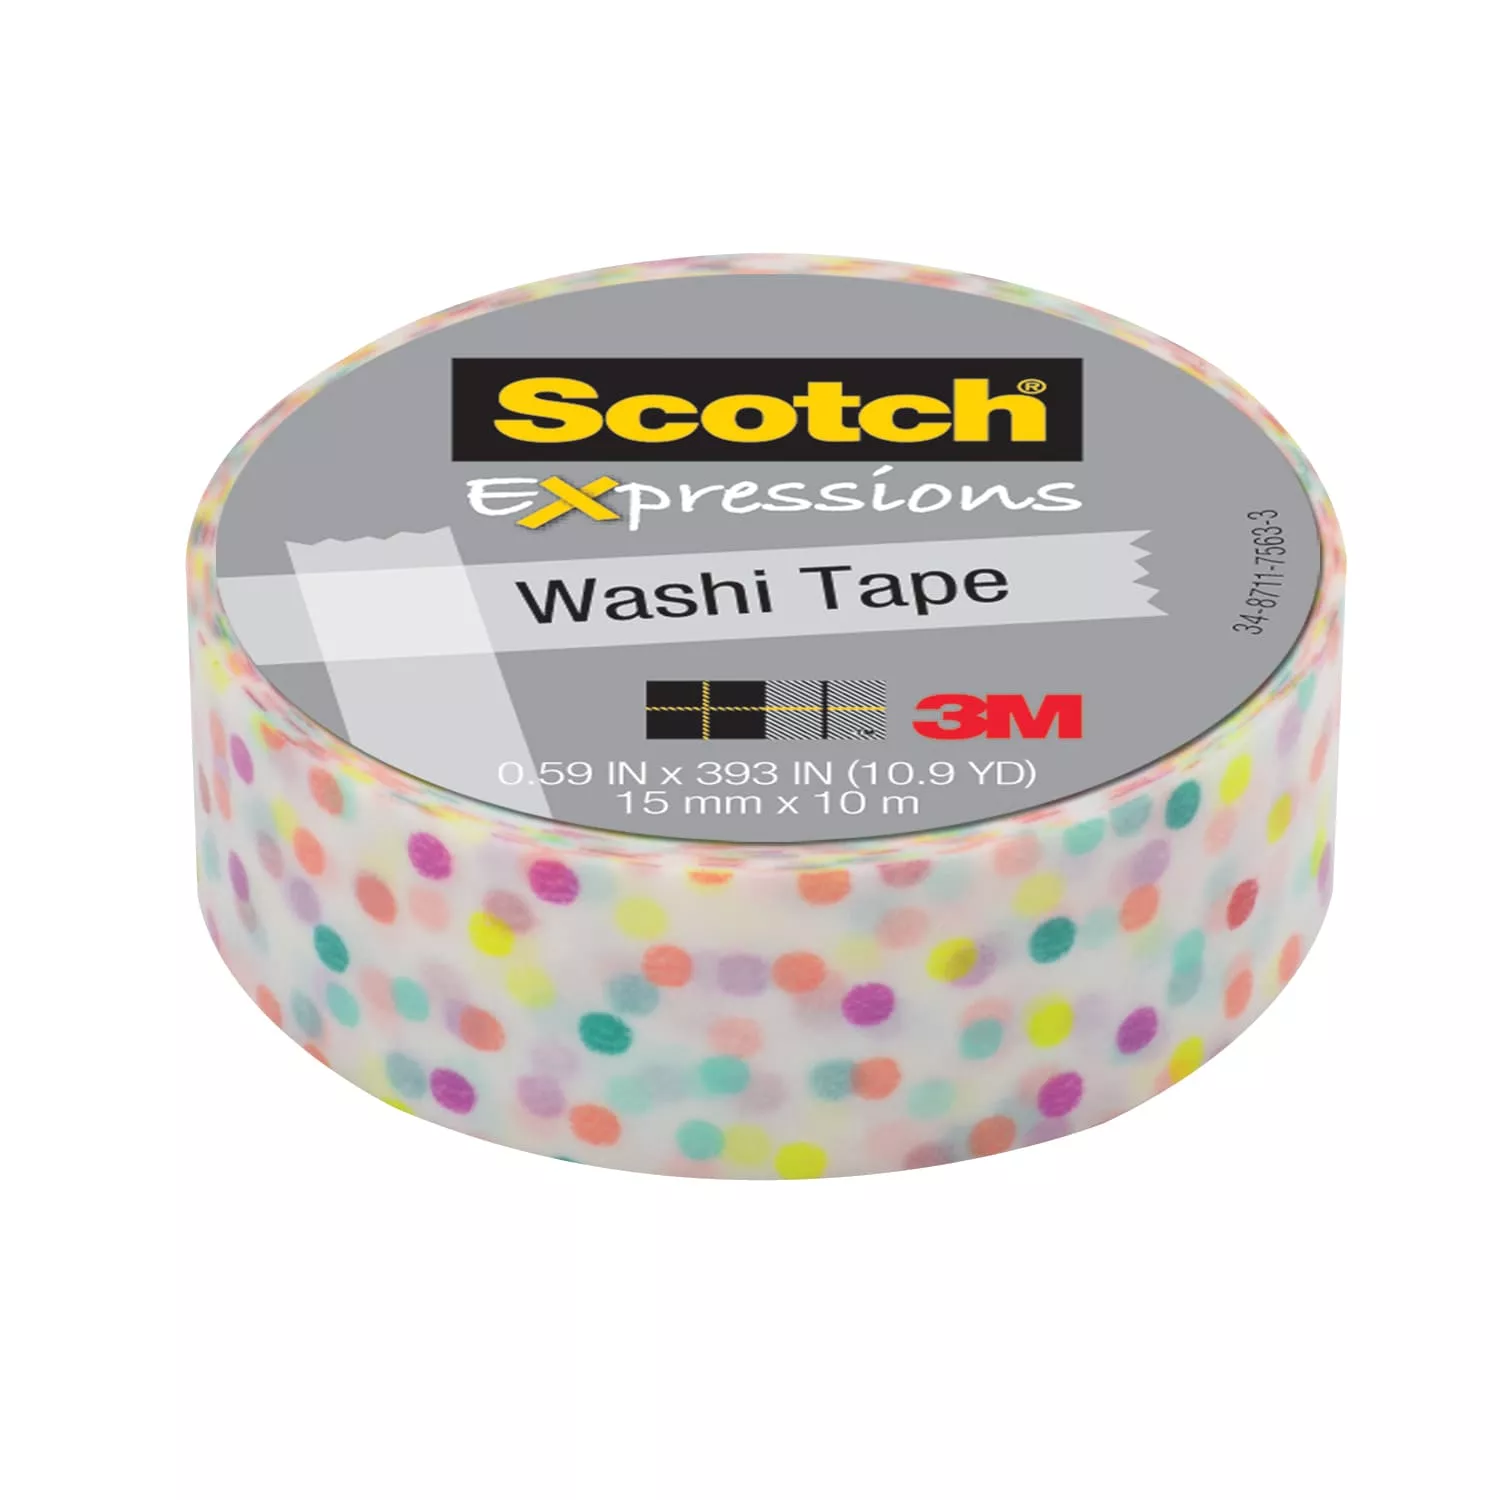 Scotch® Expressions Washi Tape C314-P47, .59 in x 393 in (15 mm x 10 m)
Fun Dots